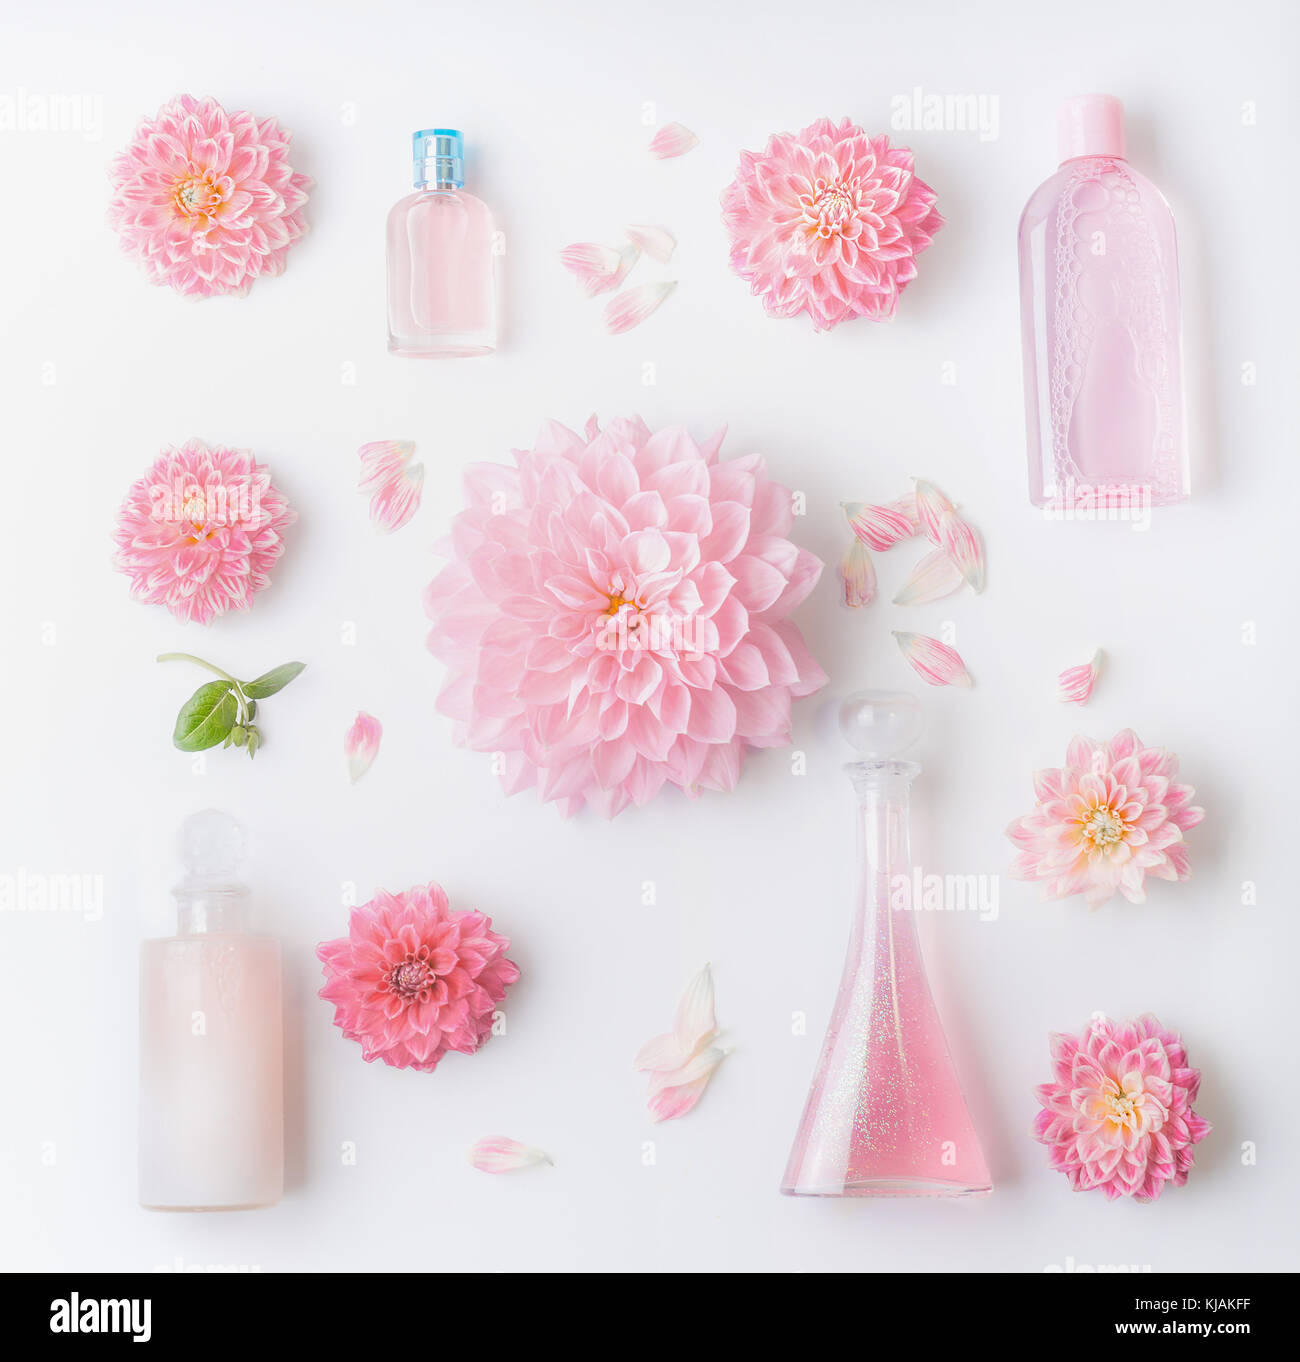 Pastellrosa Naturkosmetik Einstellung, flach mit schönen Blumen, Ansicht von oben legen. Schönheit, florale Duft und Hautpflege Stockfoto